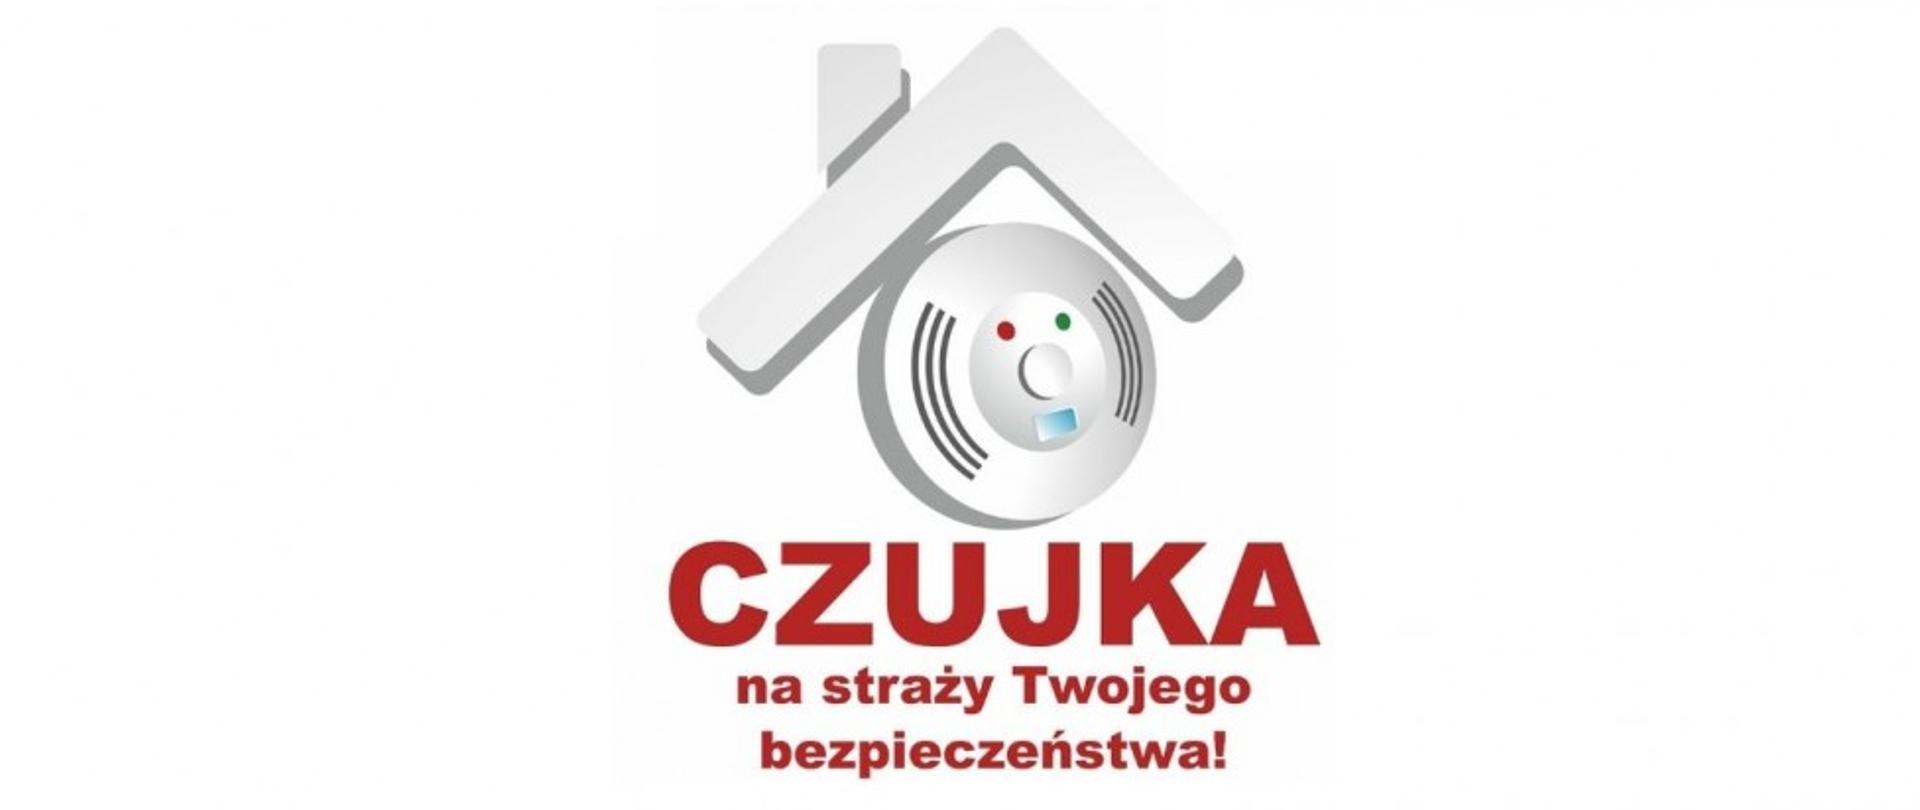 Zdjęcie przedstawia Logo Kampanii Czujka na straży Twojego bezpieczeństwa